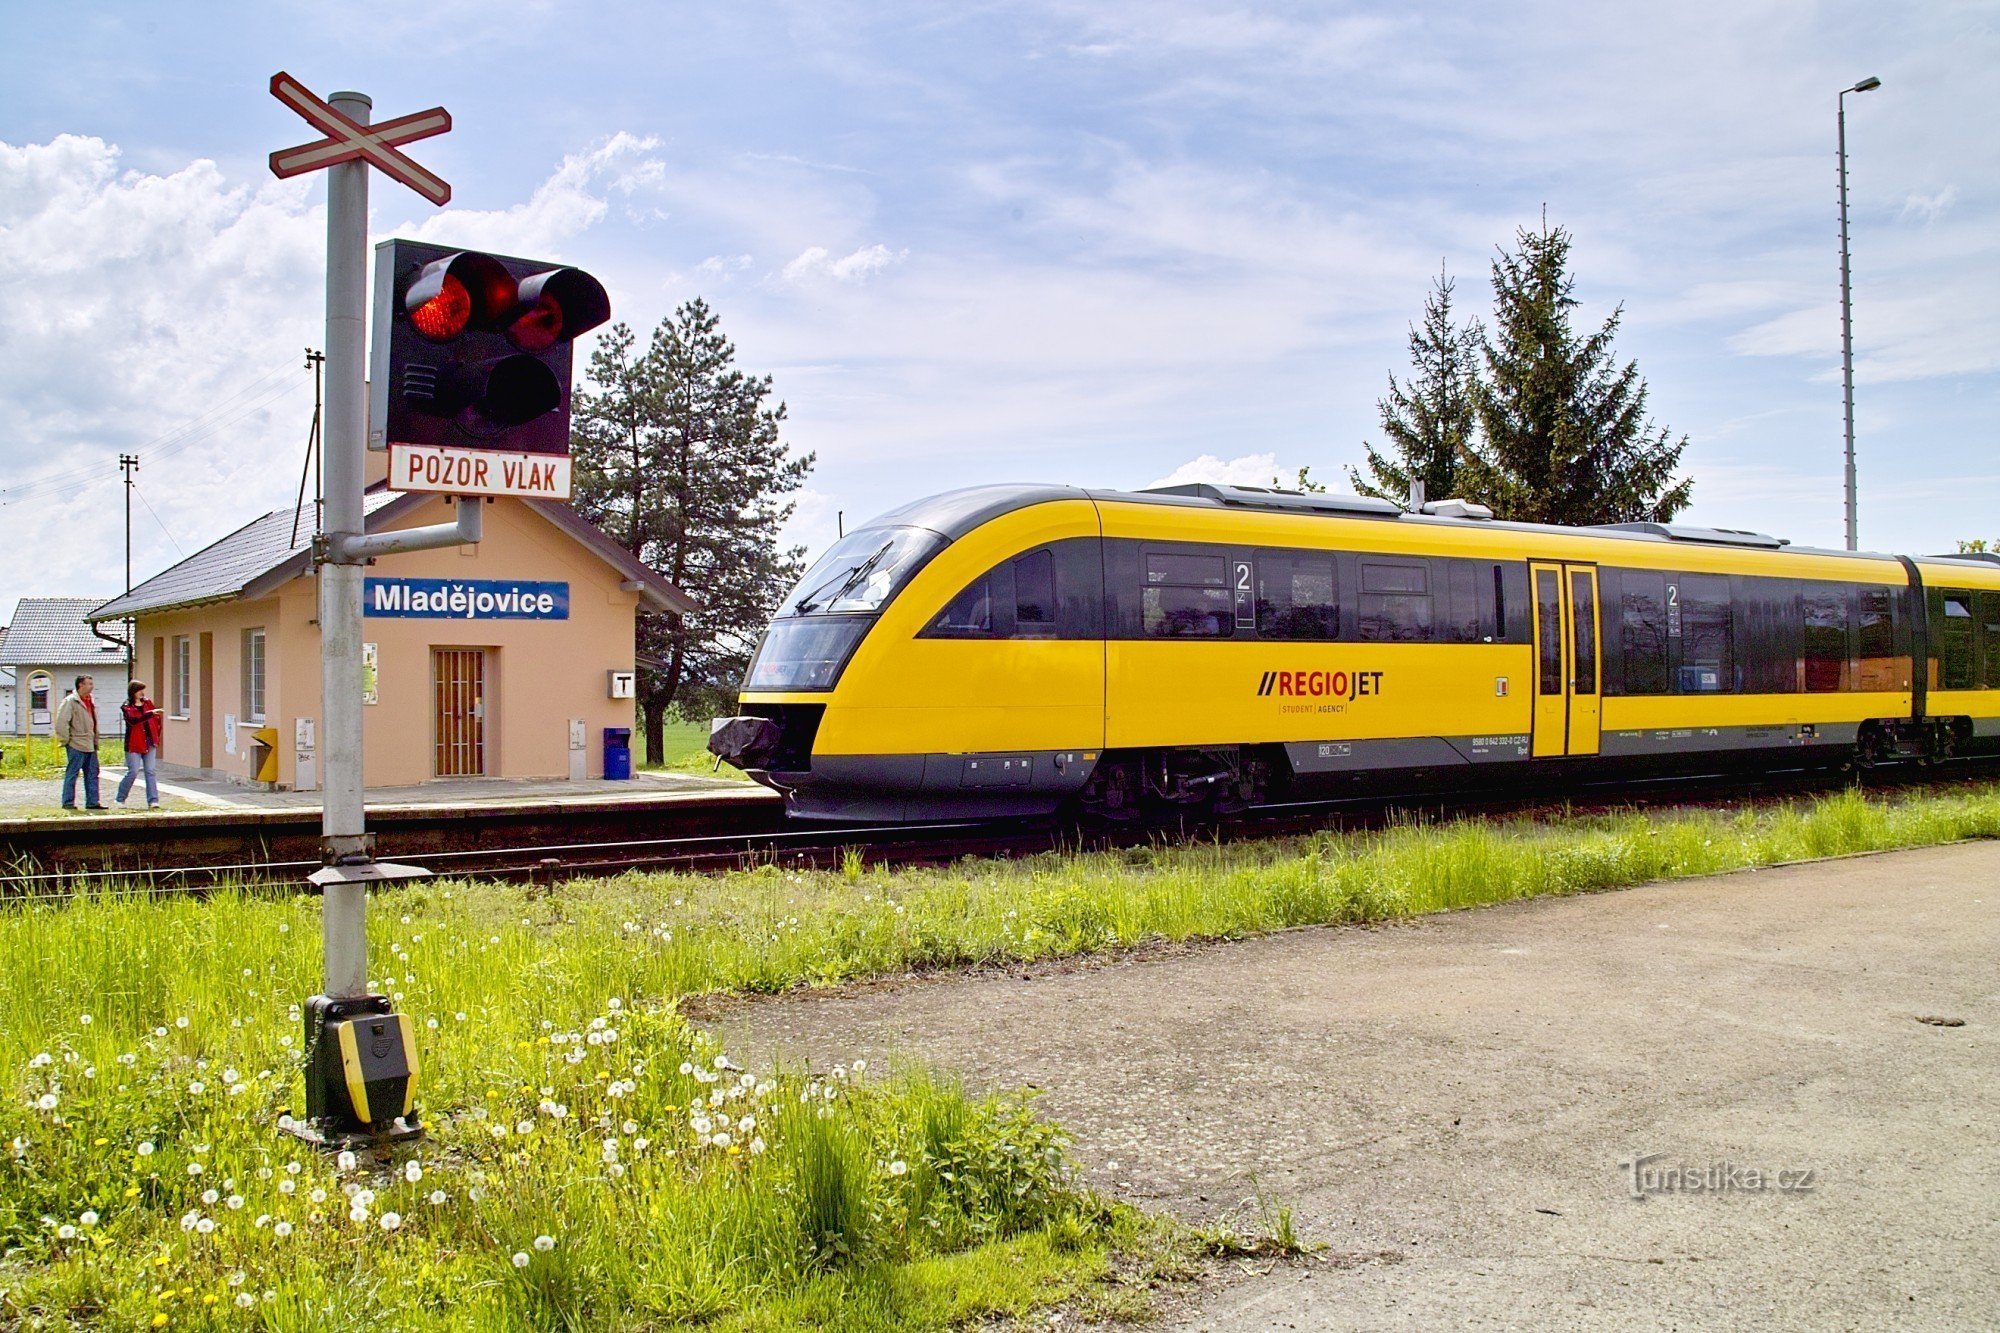 Stazione ferroviaria di Mladějovice